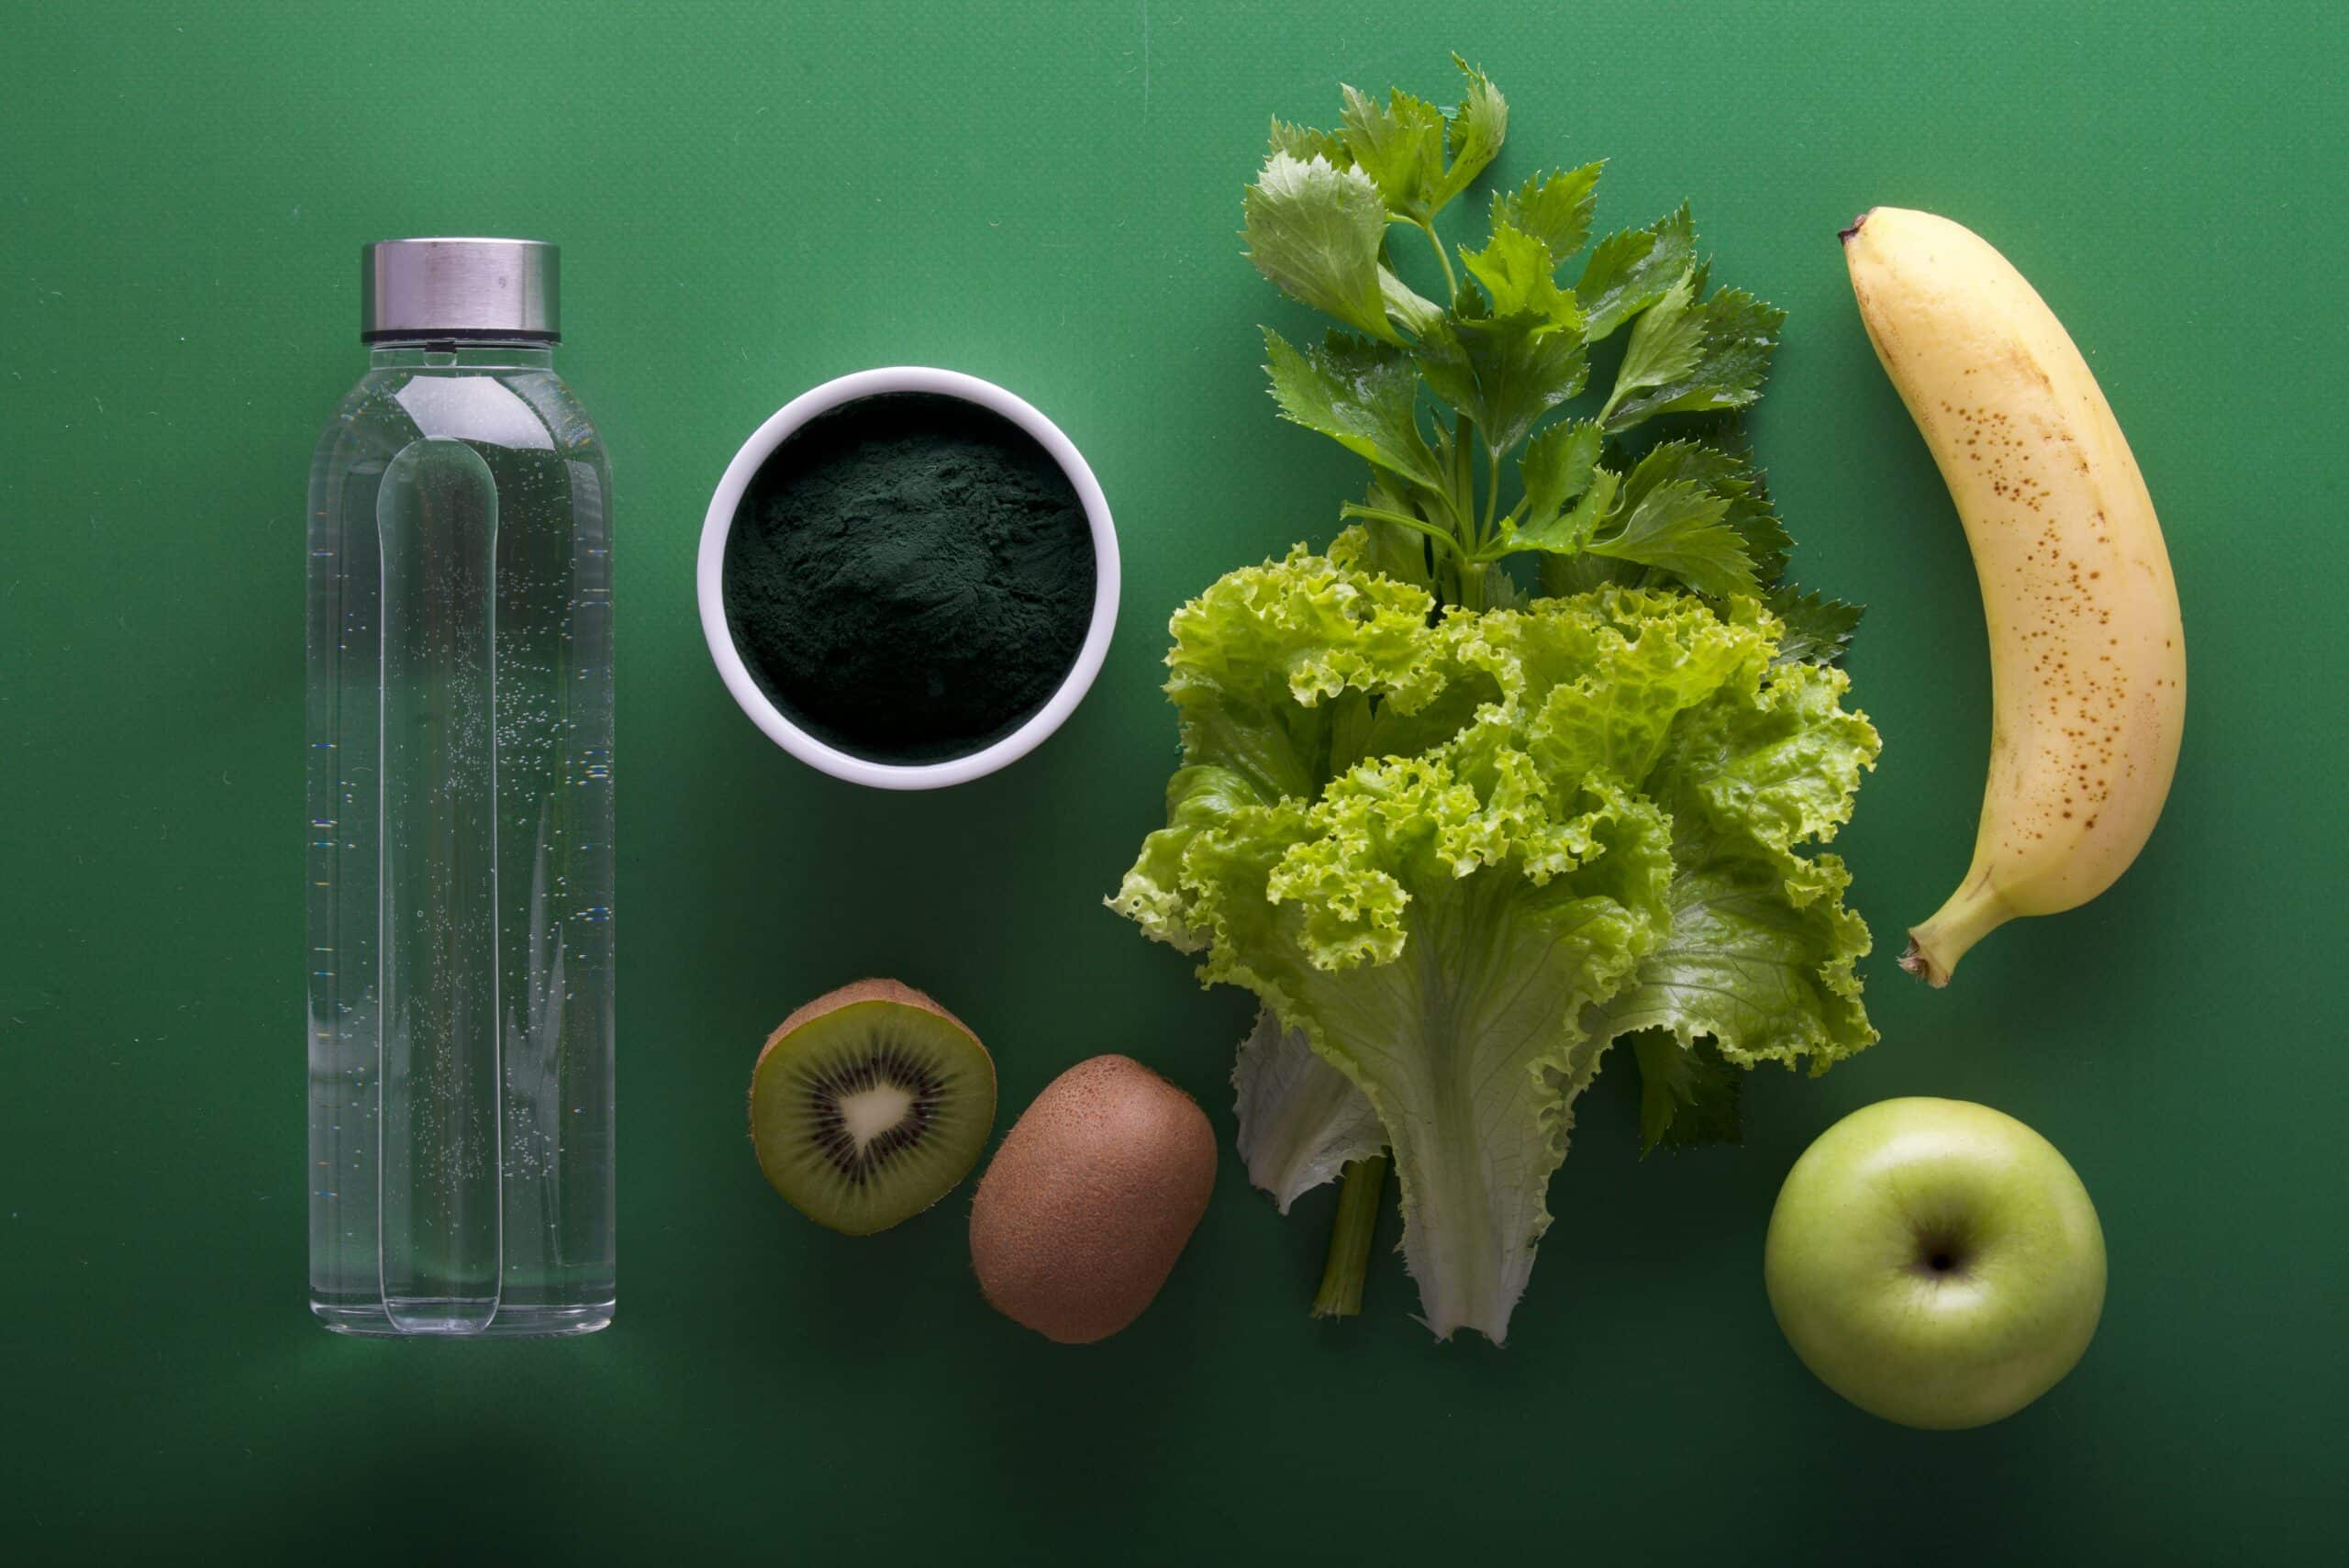 Illustrasjonsbilde som viser en vannflaske, en kopp kaffe og diverse frukt og grønsaker. Bakgrunnen er grønn.